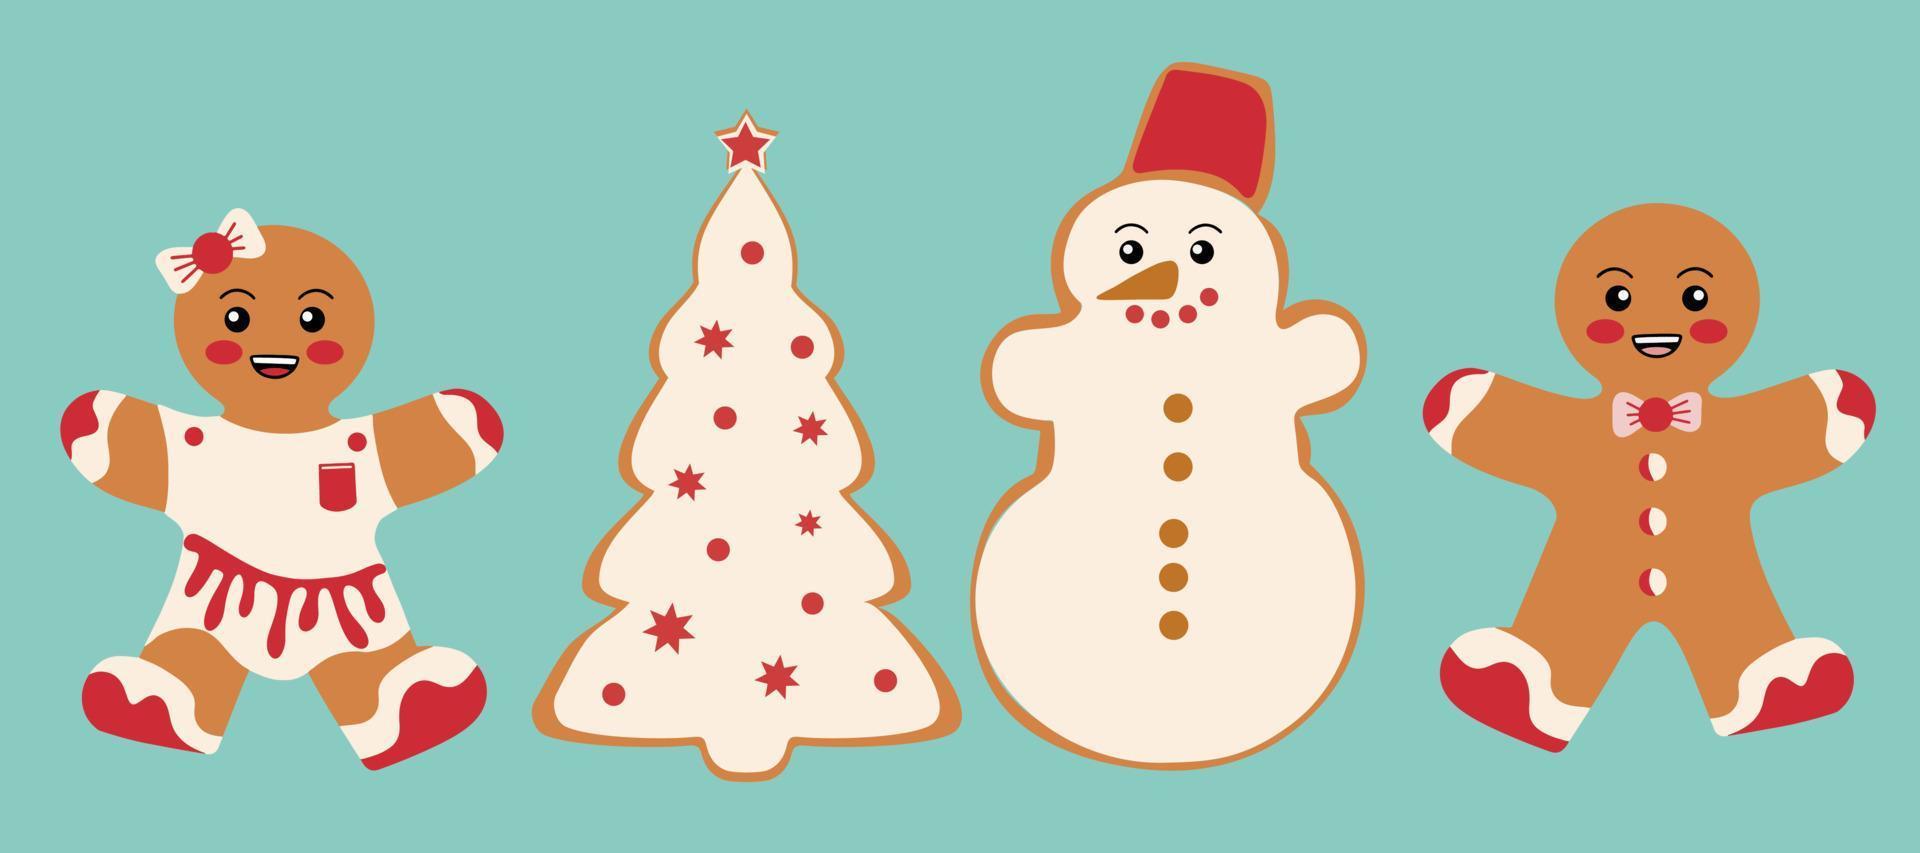 festliche kekse mit lebkuchenmännern, einem schneemann und einem weihnachtsbaum. Frohe Weihnachtsdekoration. Fröhliche Weihnachten. feier von neujahr und weihnachten vektor